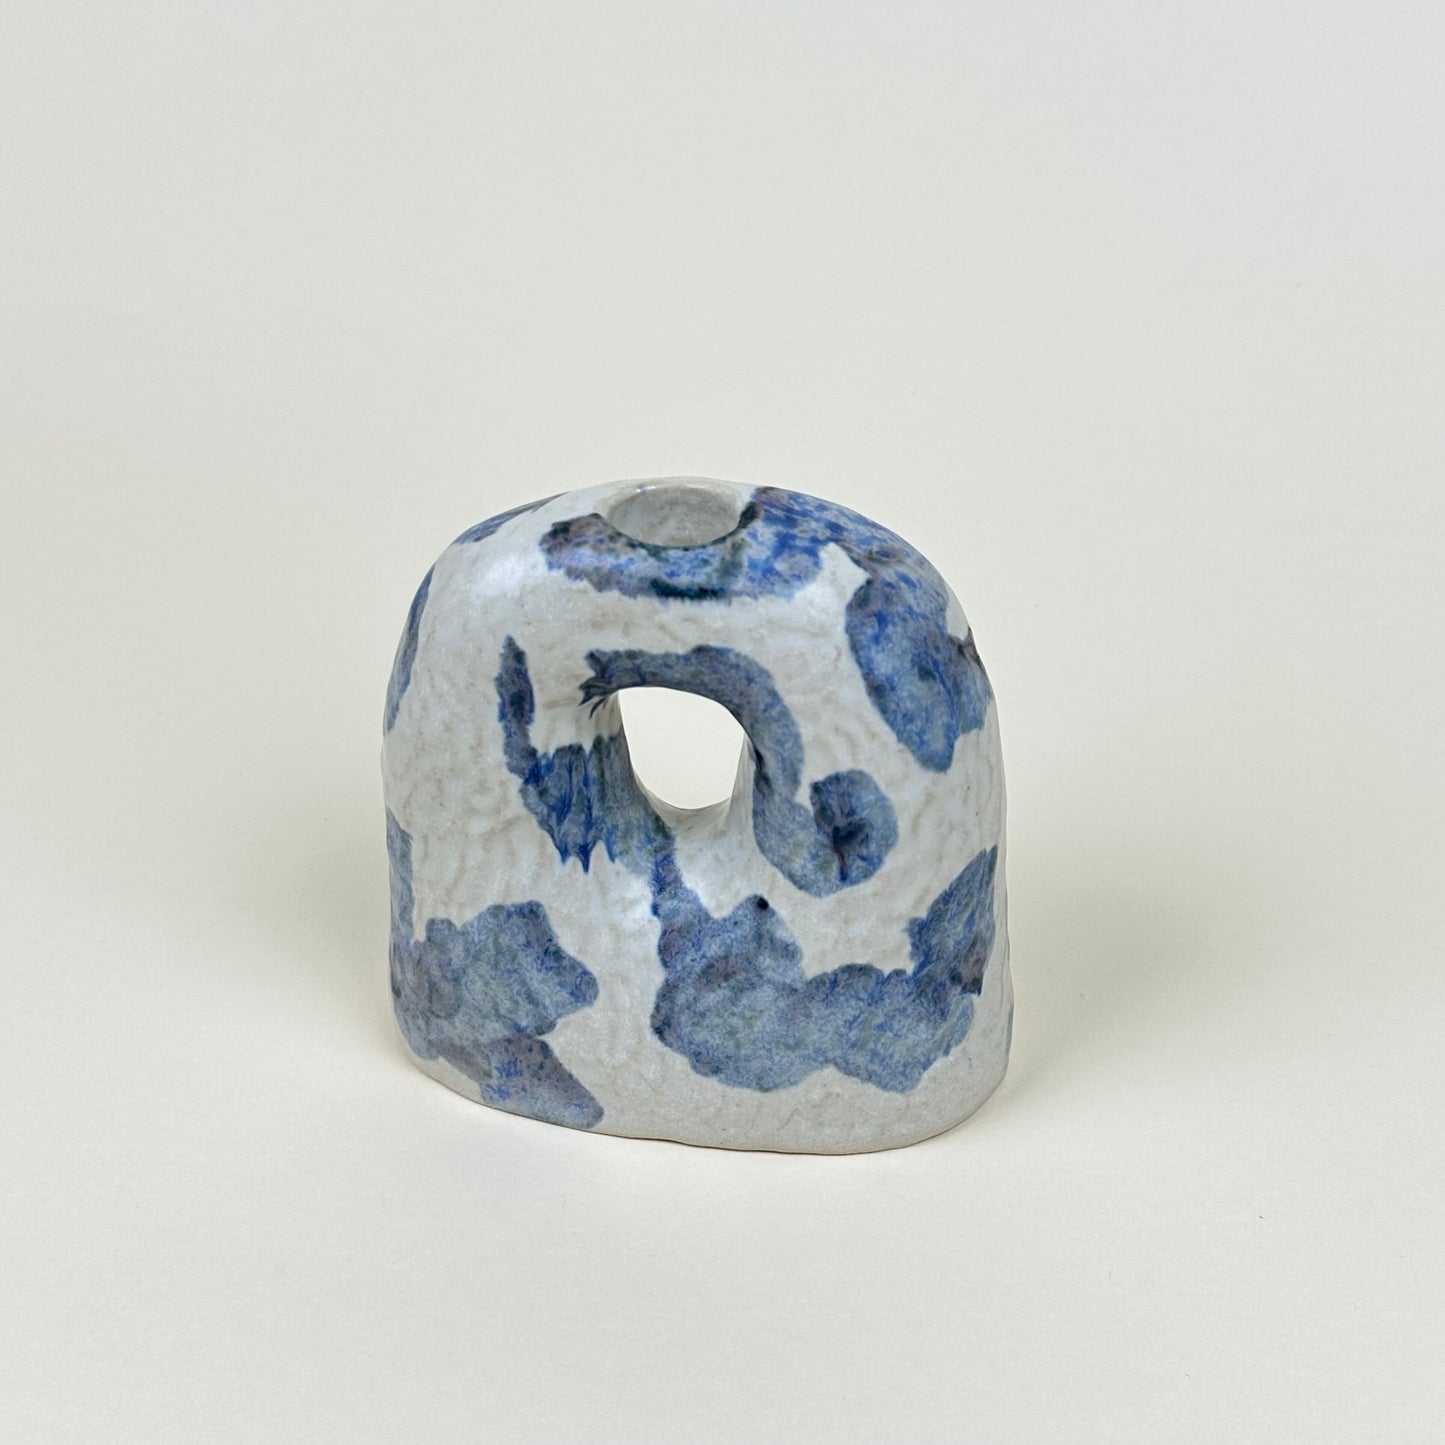 White and blue stoneware candle holder by Malwina Kleparska